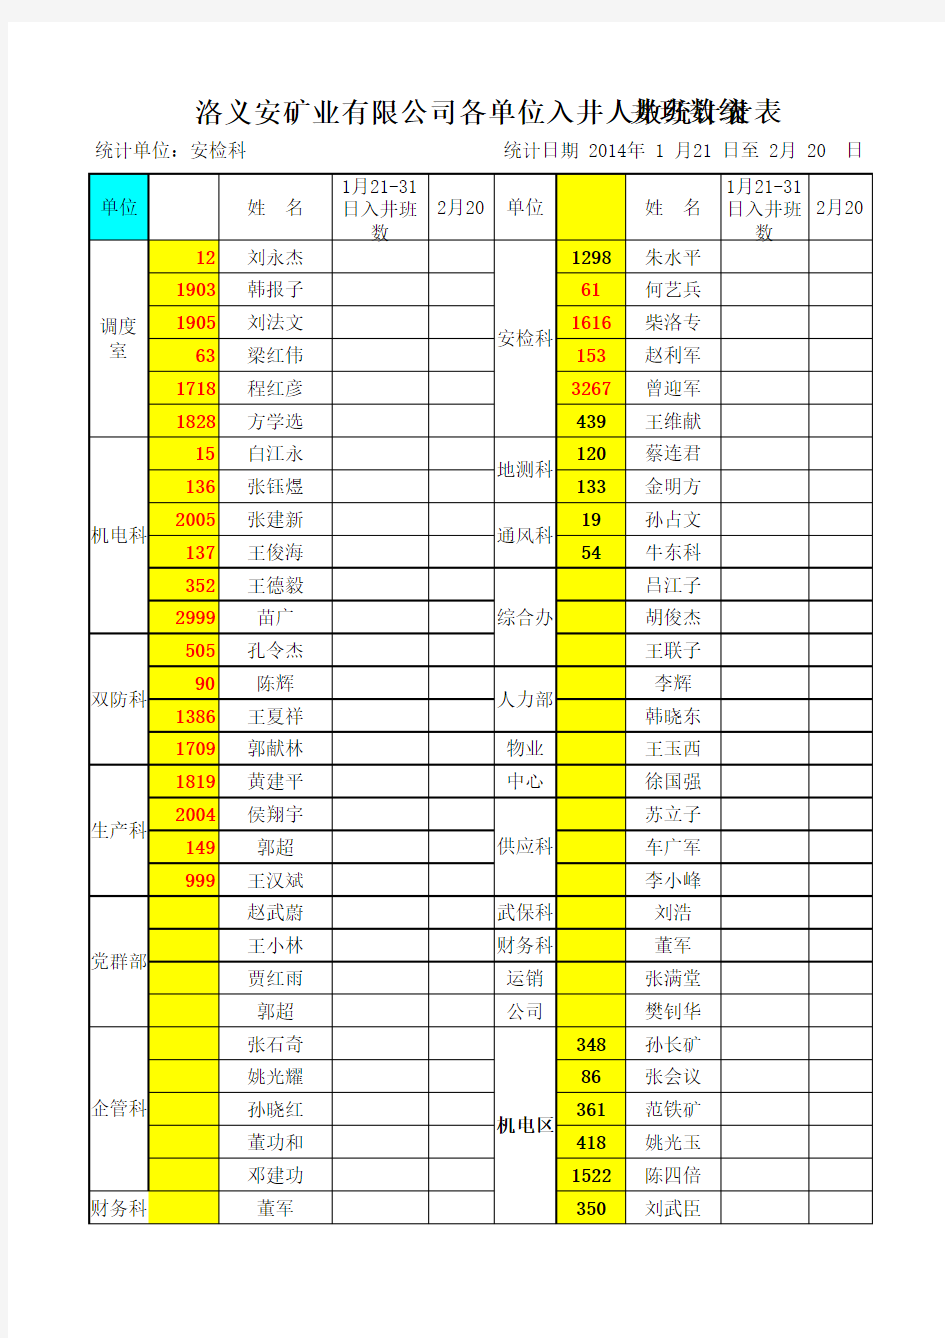 2014年2月份统计表(公司各单位副科级人员)